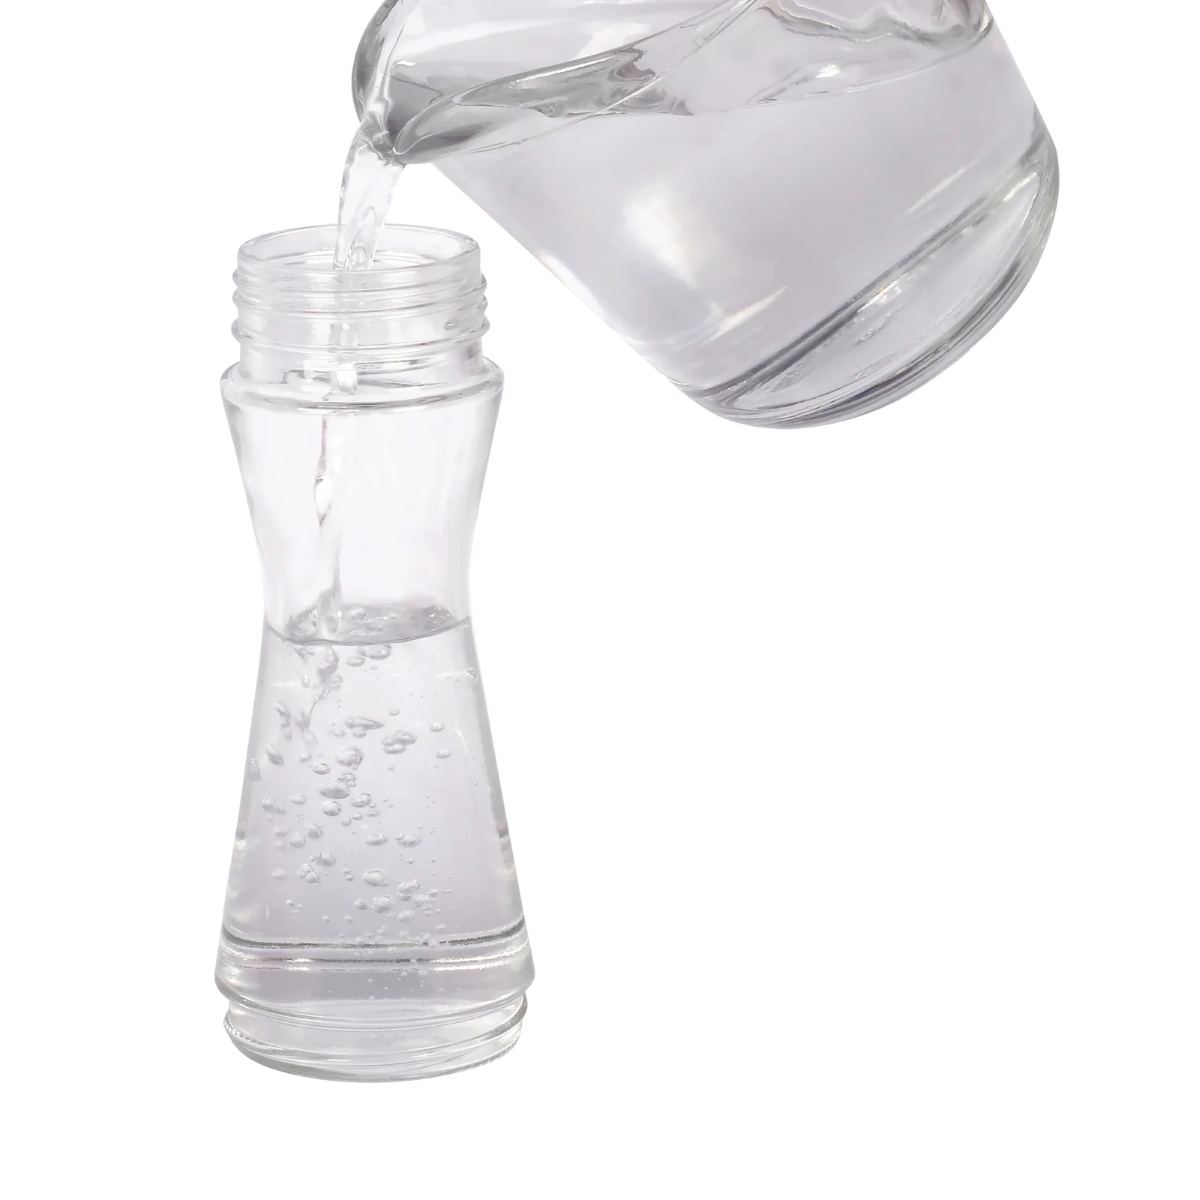 Water filling clear bottle